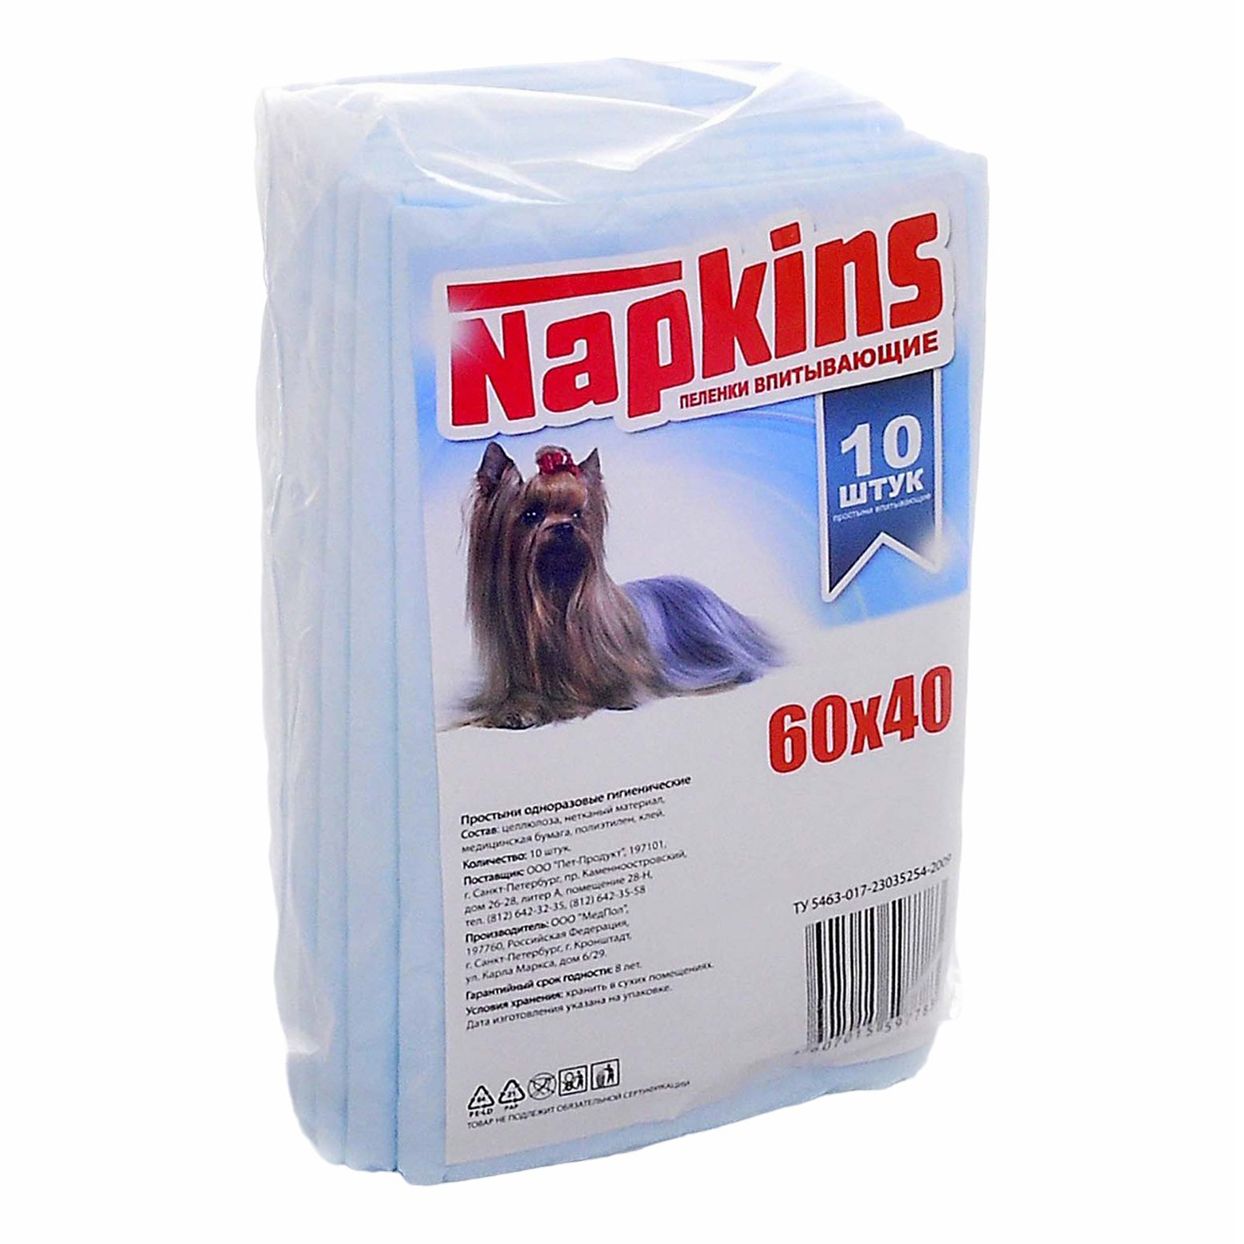 Пеленки для собак Napkins 60 x 40 см 10 шт